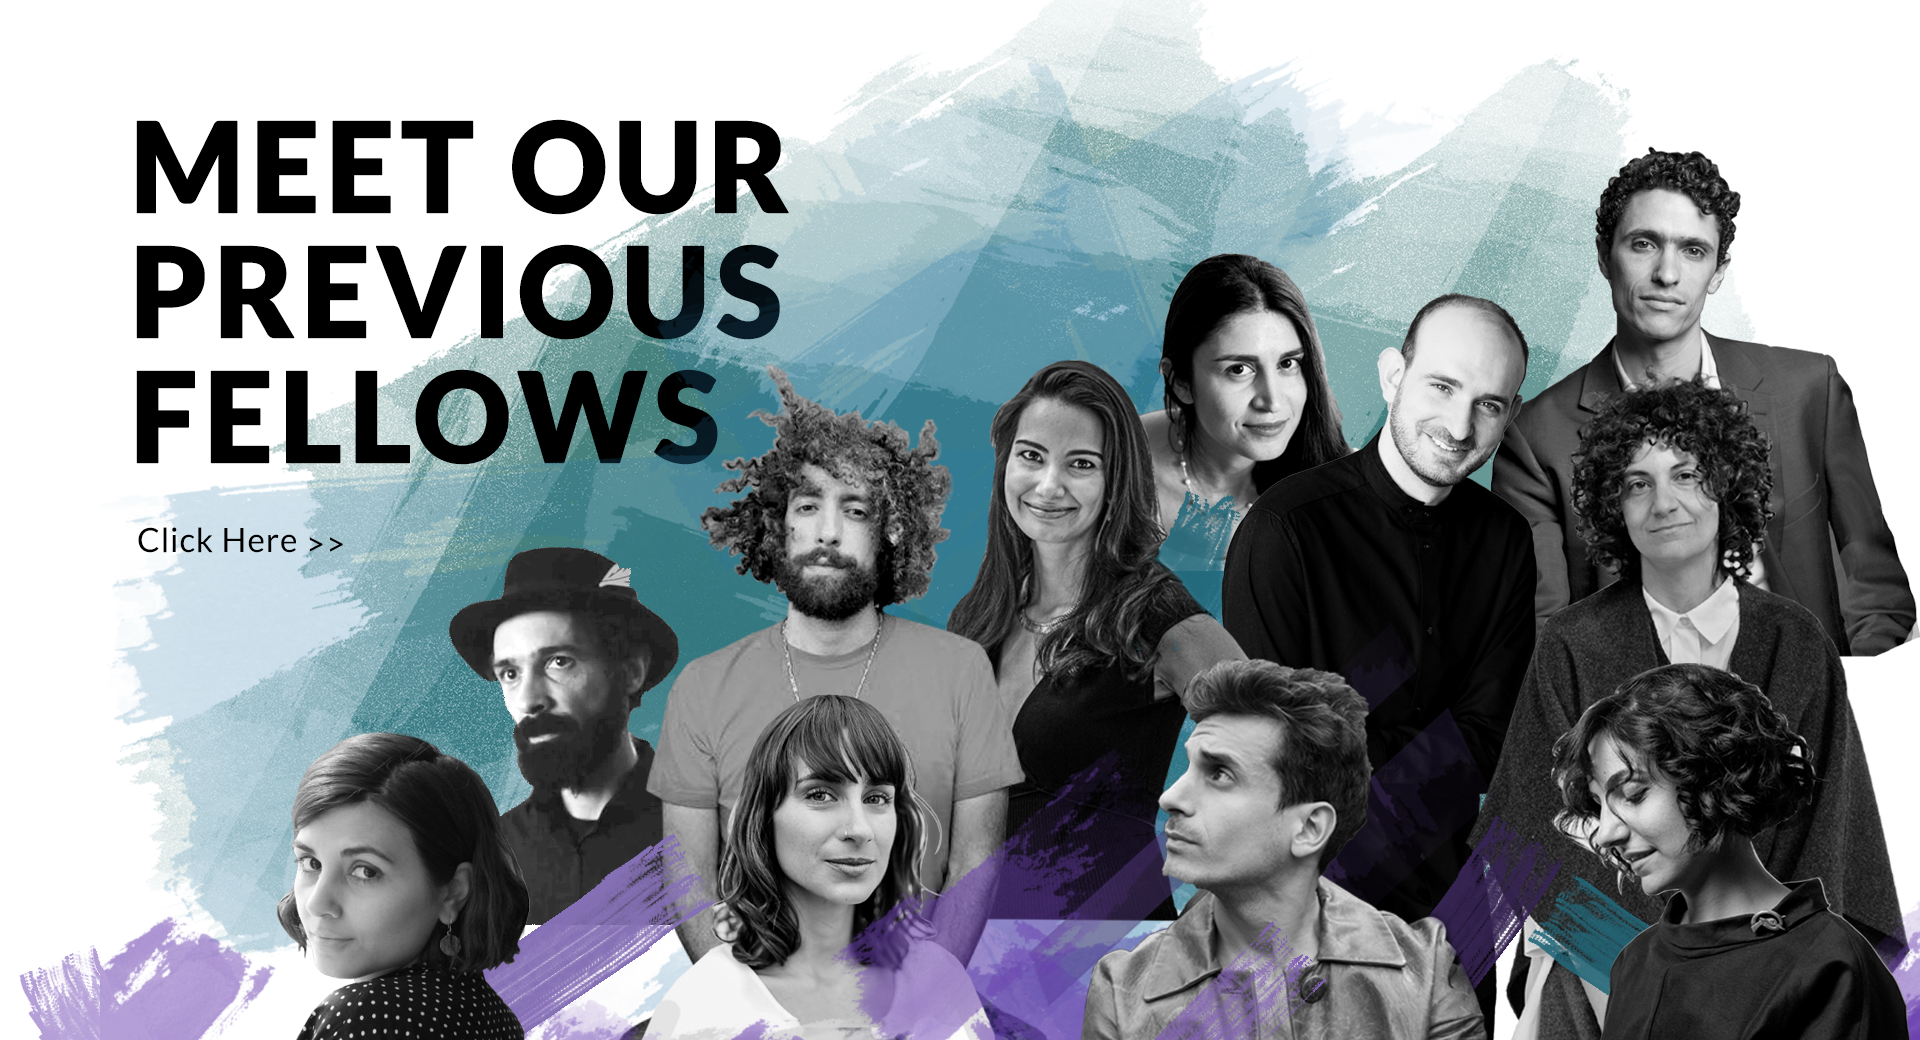 Creative Armenia - AGBU Fellowships banner with "Meet our Previous fellows" text